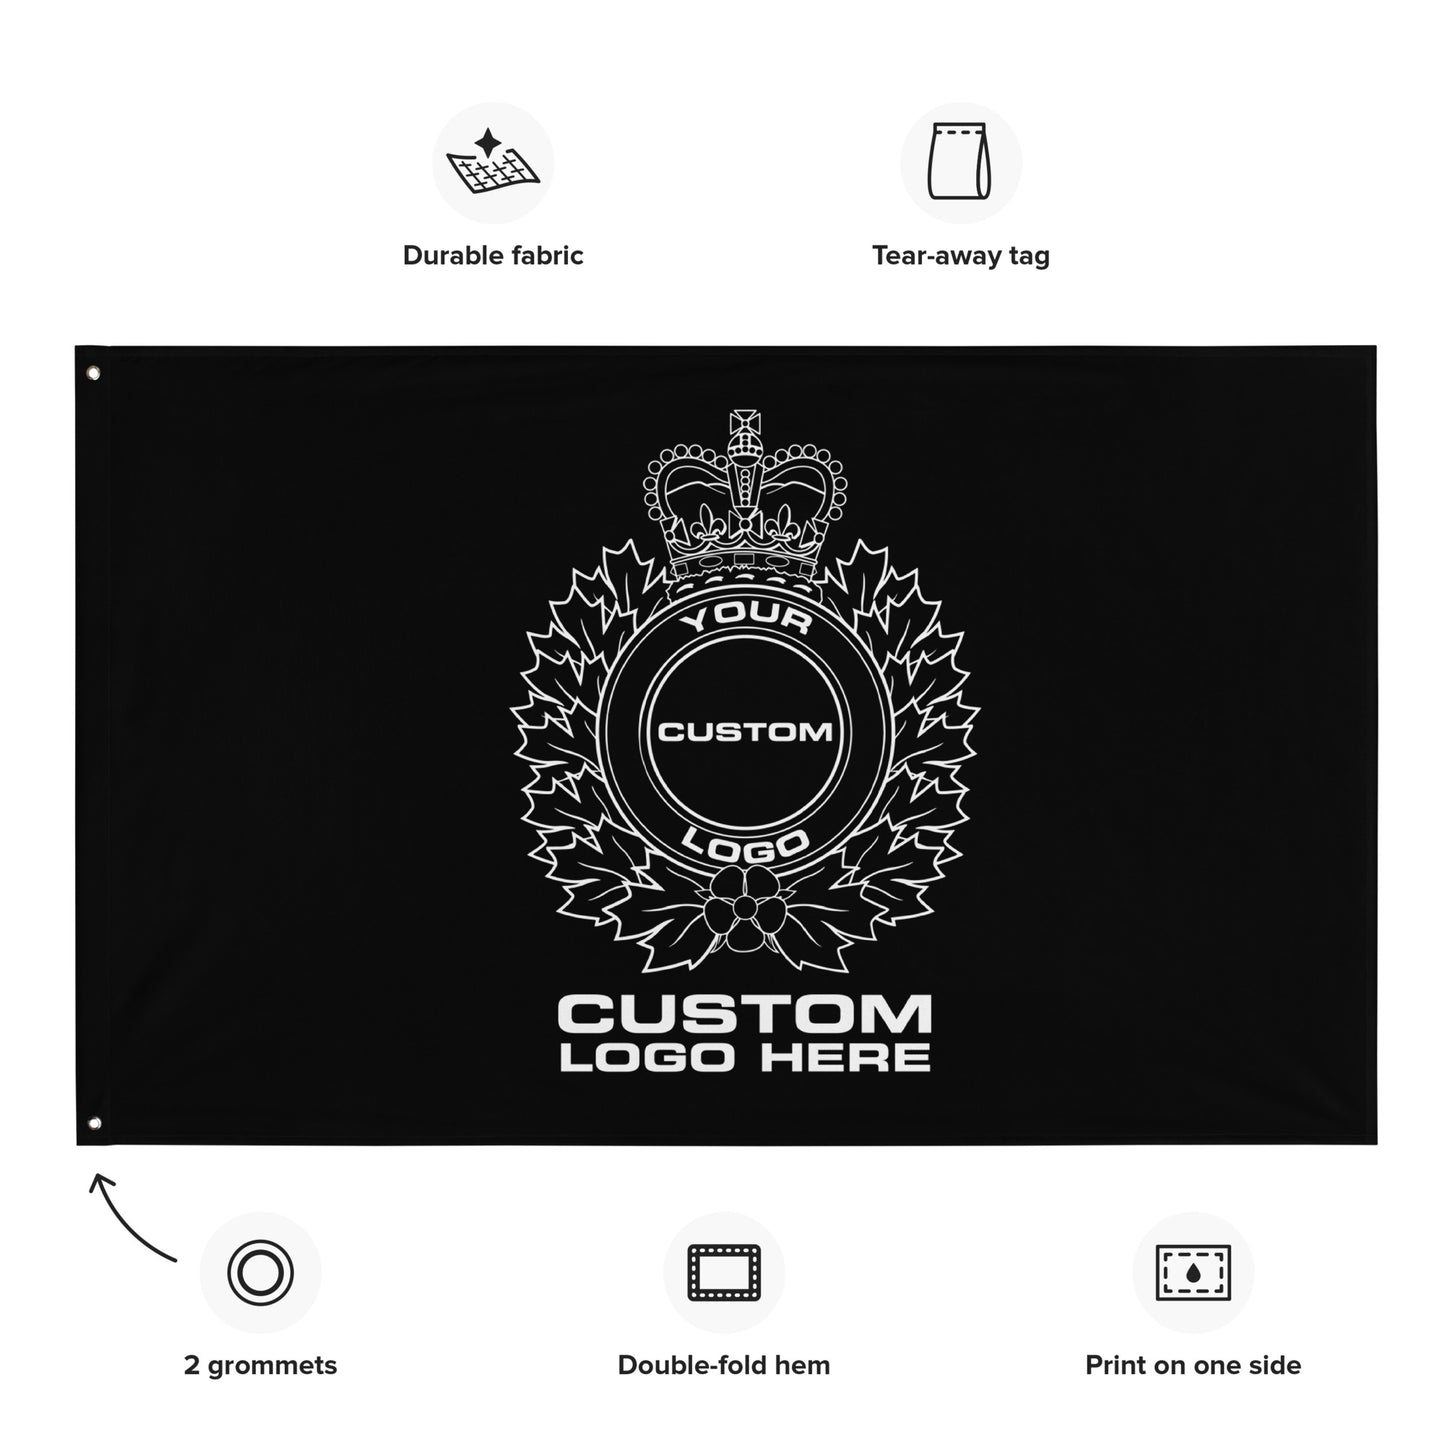 Custom Police, LEO, Sheriff, Corrections Agency Logo Wall Flag-911 Duty Gear Canada-911 Duty Gear Canada